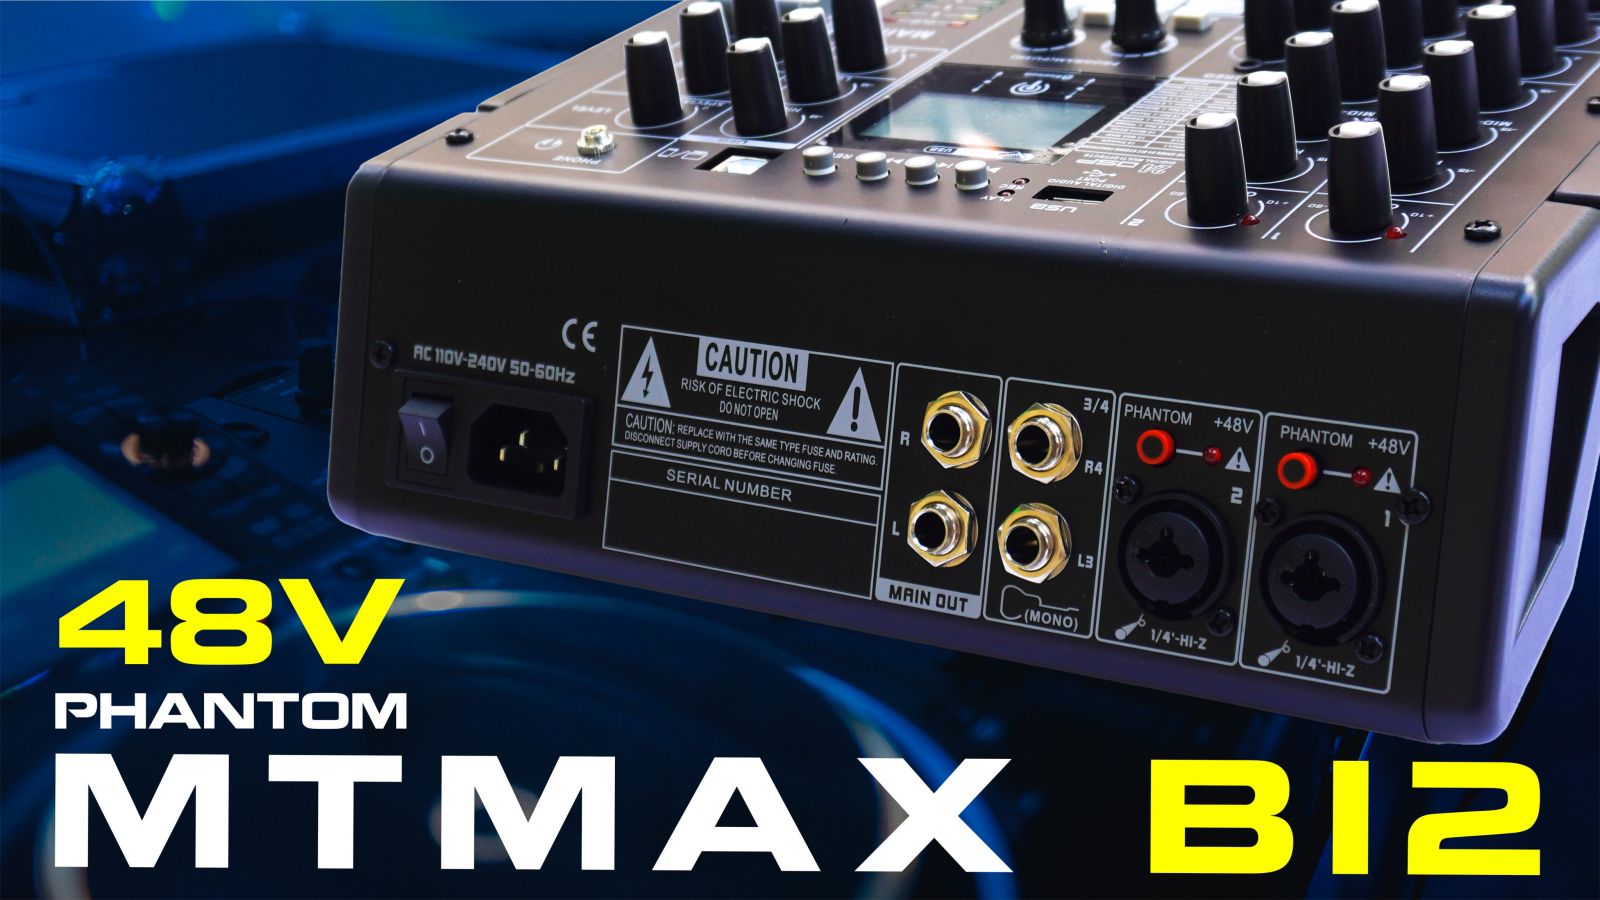 Bàn trộn âm thanh Mixer MTMax B12 - 4 kênh (3 mono, 1 stereo) -Có hiệu ứng âm thanh như sound card - 24 hiệu ứng vang số DSP có thể hiệu chỉnh sâu -Có Bluetooth, tích hợp nguồn 48V-Kết nối máy tính, điện thoại thu âm, livestream dễ dàng.